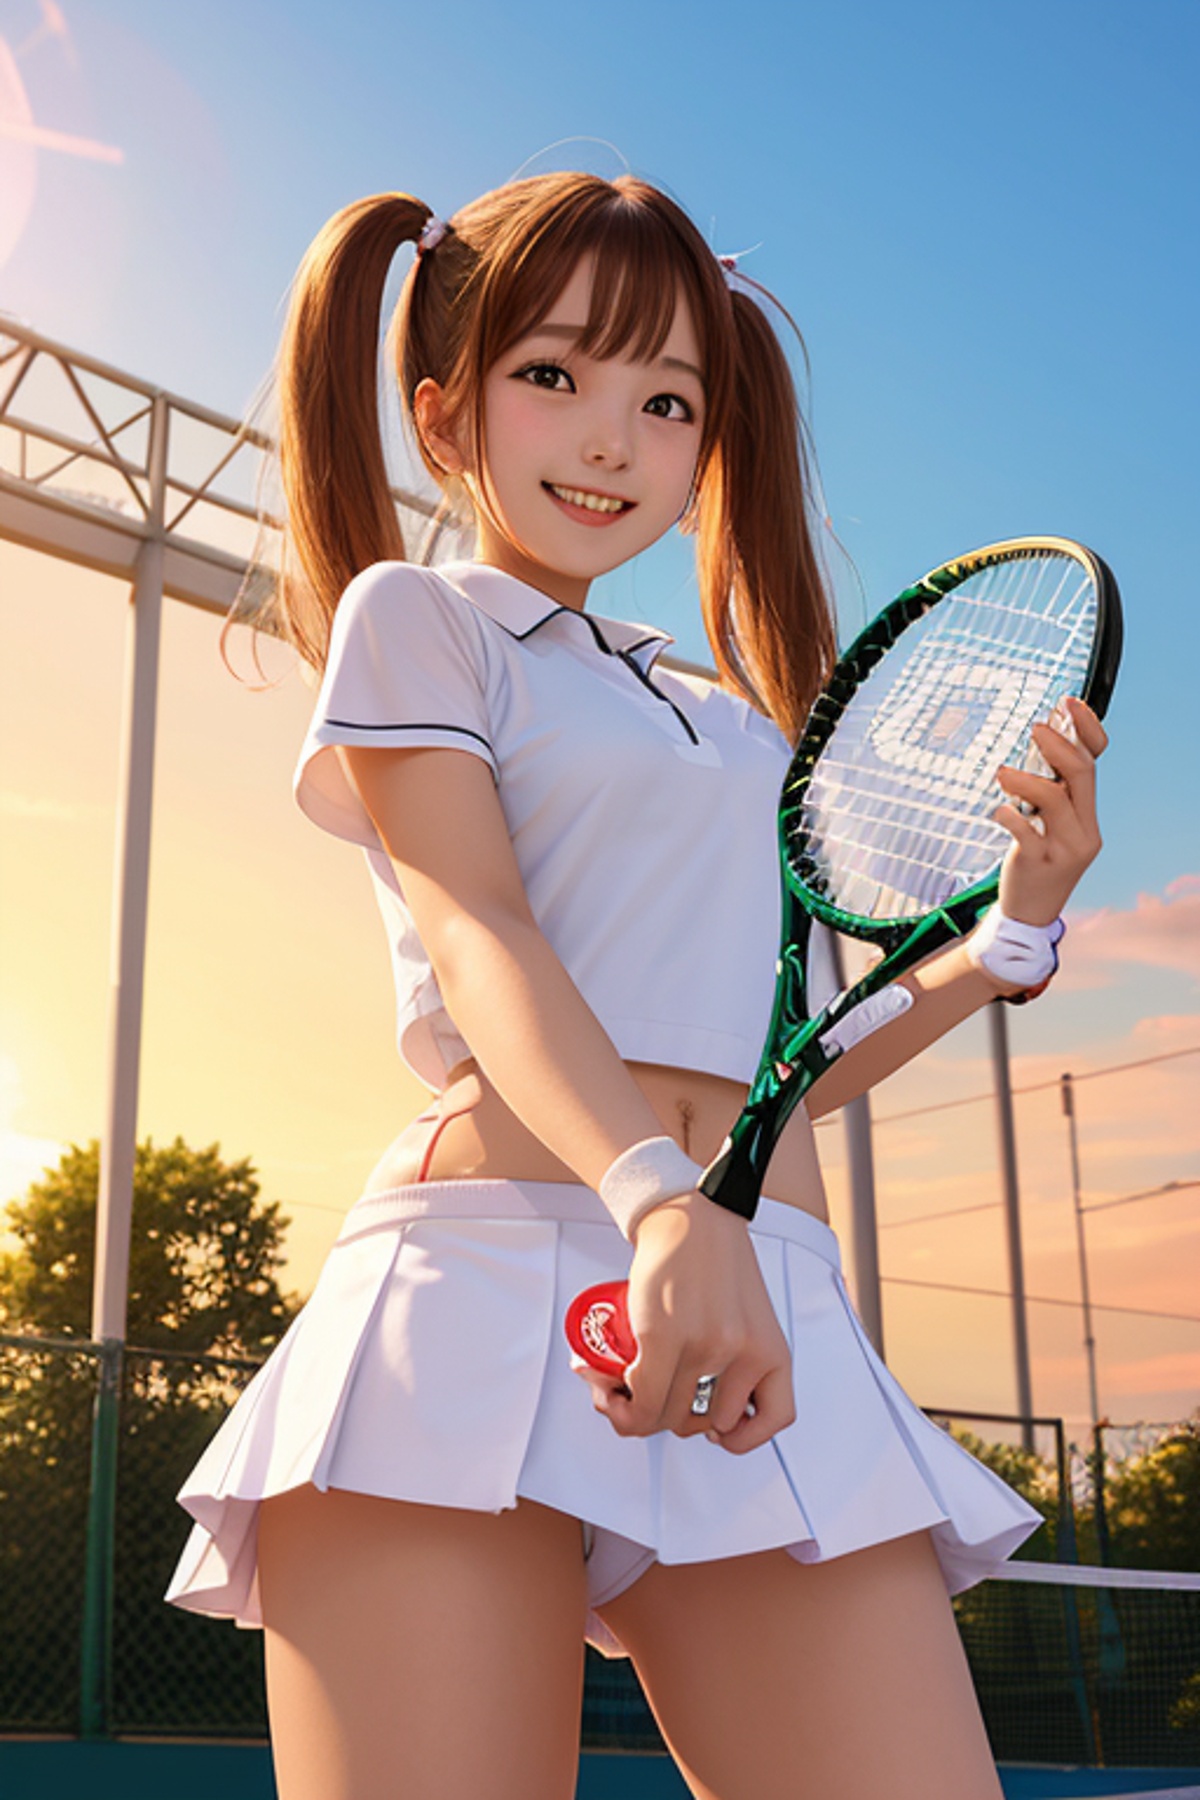 テニス　パンチラ　 高校女子テニス部試合盗撮に見える『透けパンツ』の新たな可能性